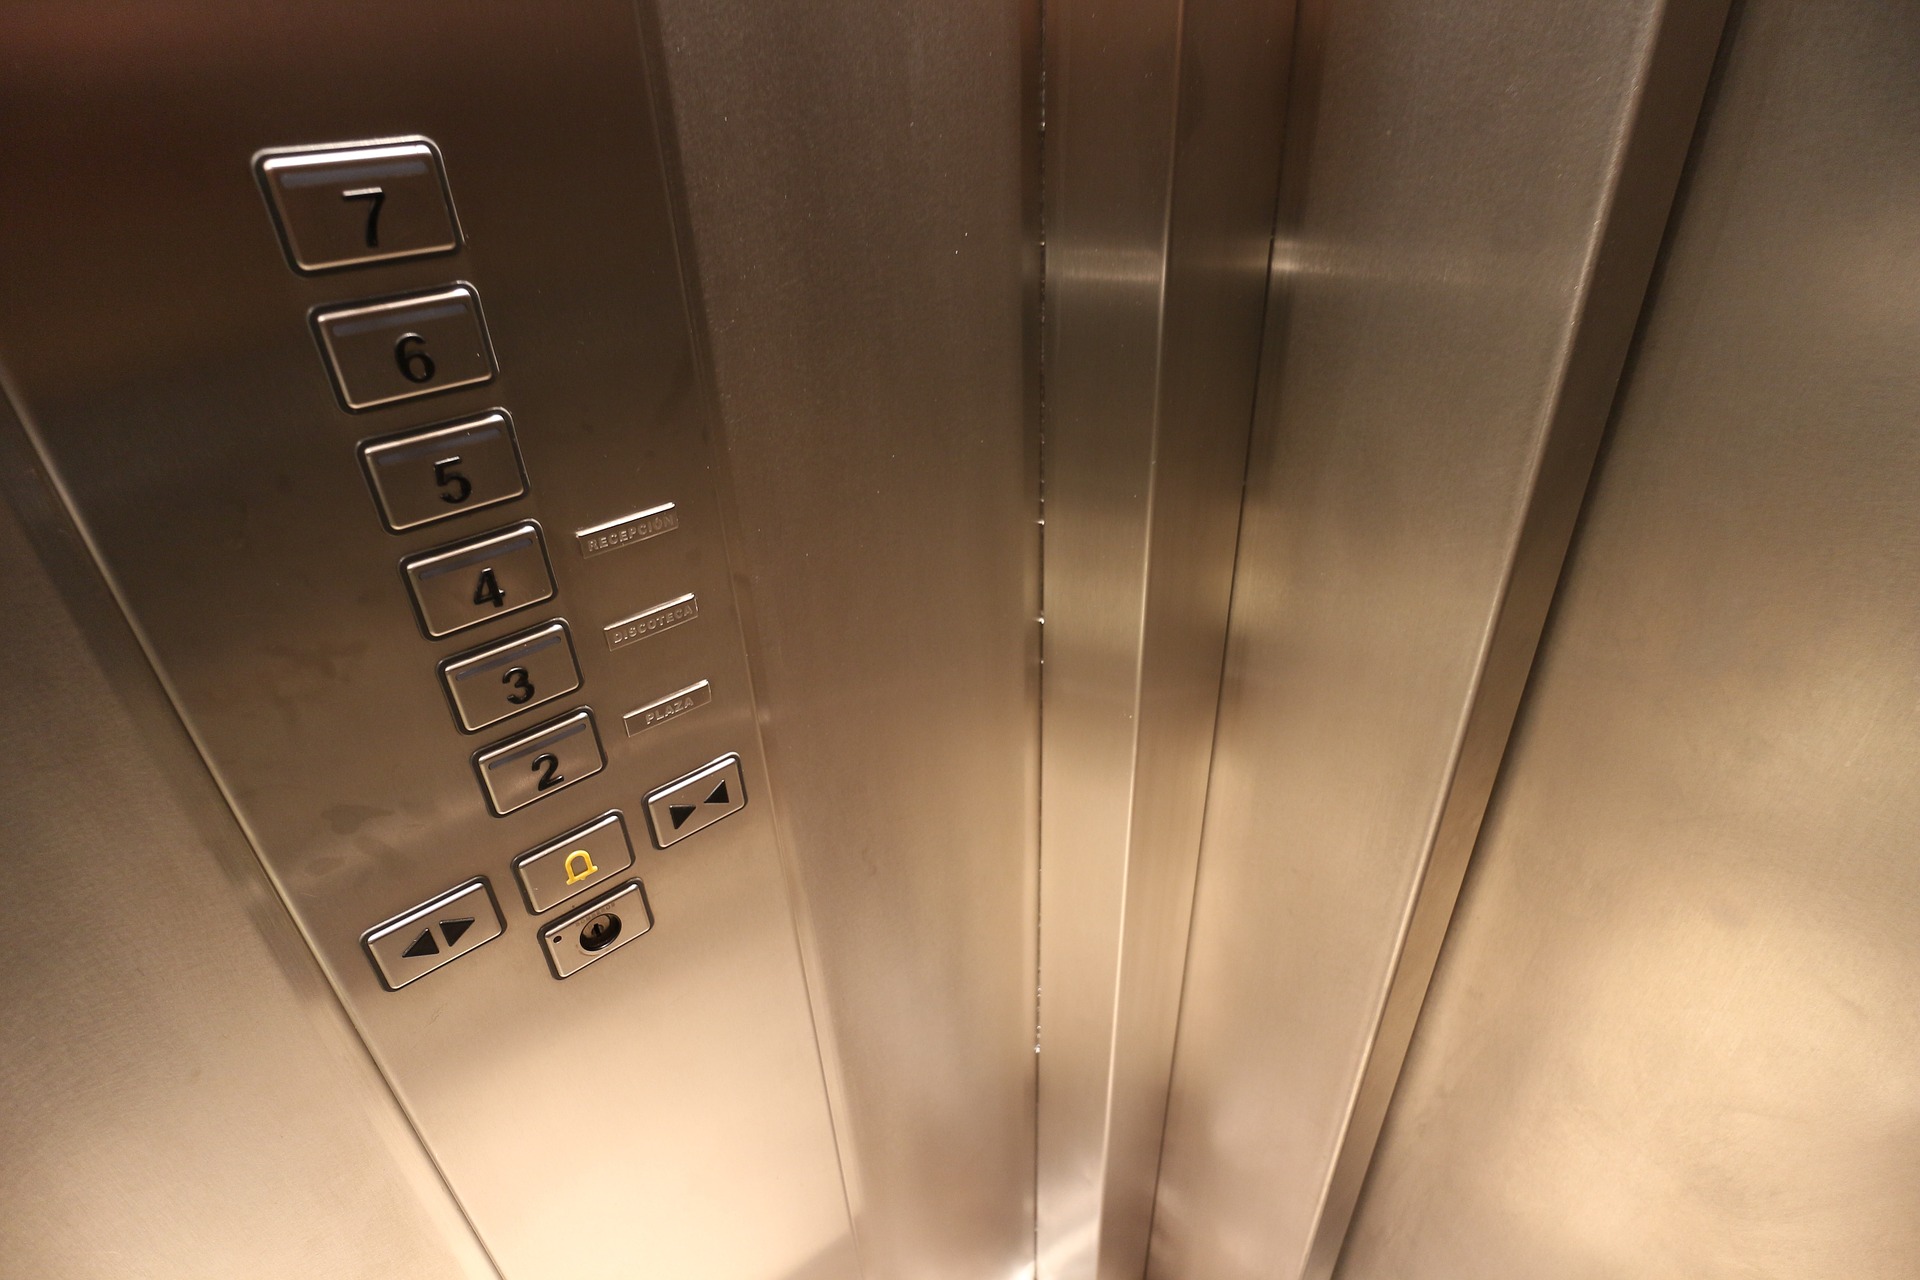 Қазақстанда лифт шаруашылығы орталығын құру жоспарлануда